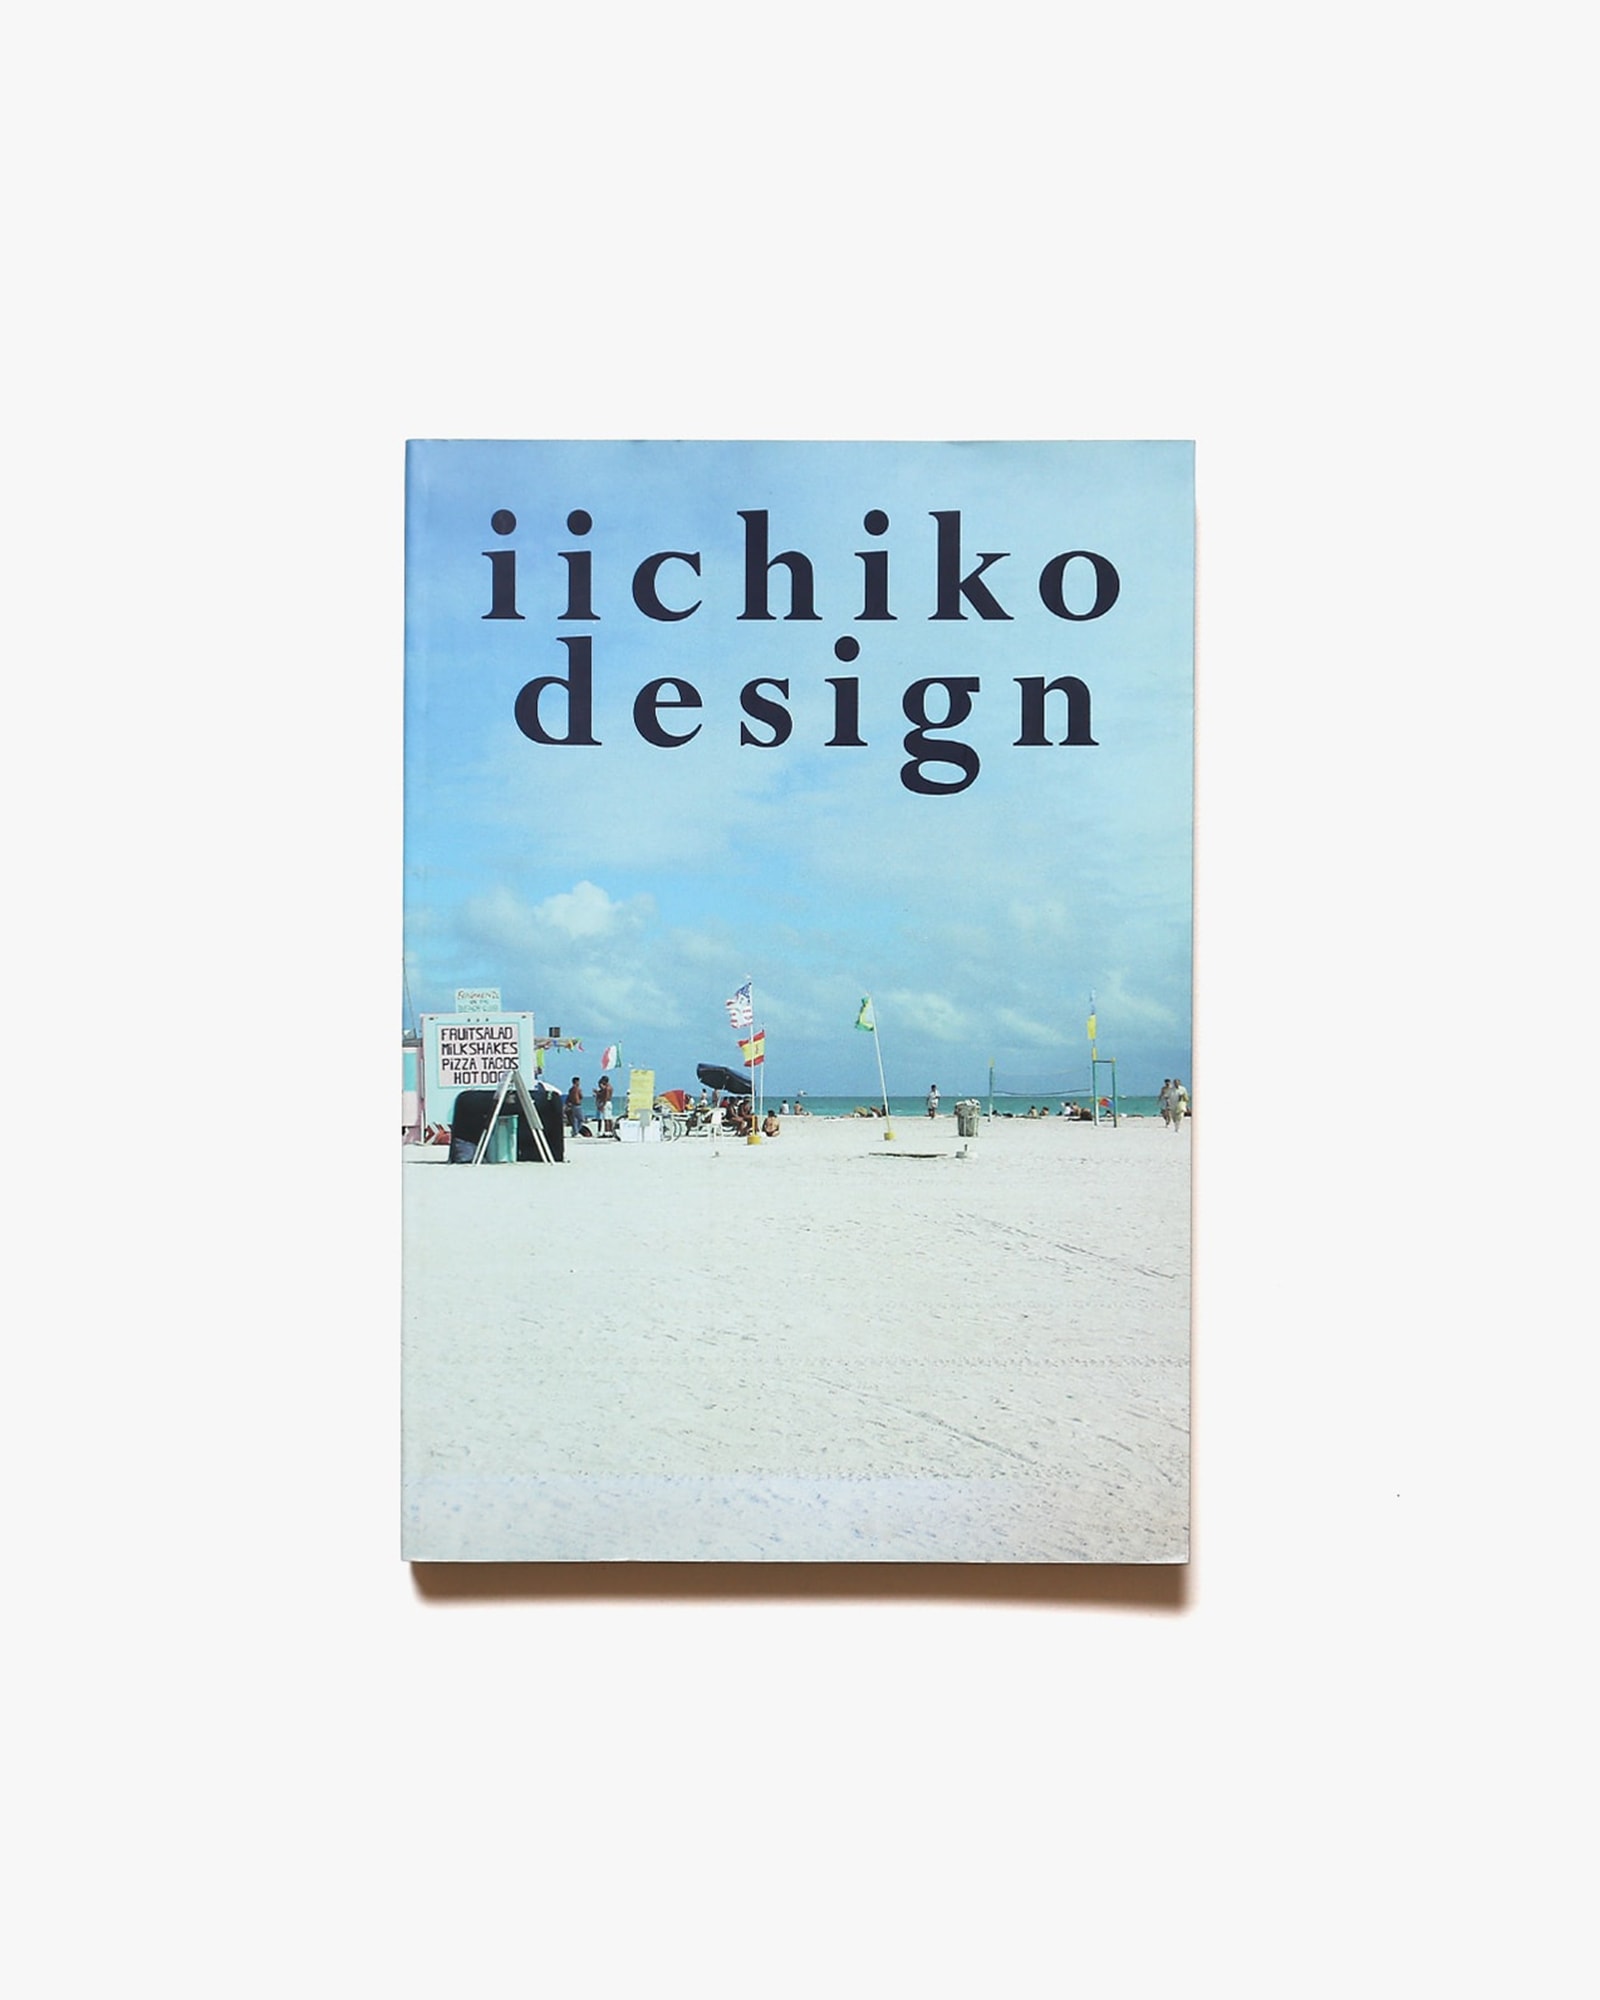 iichiko design 1992